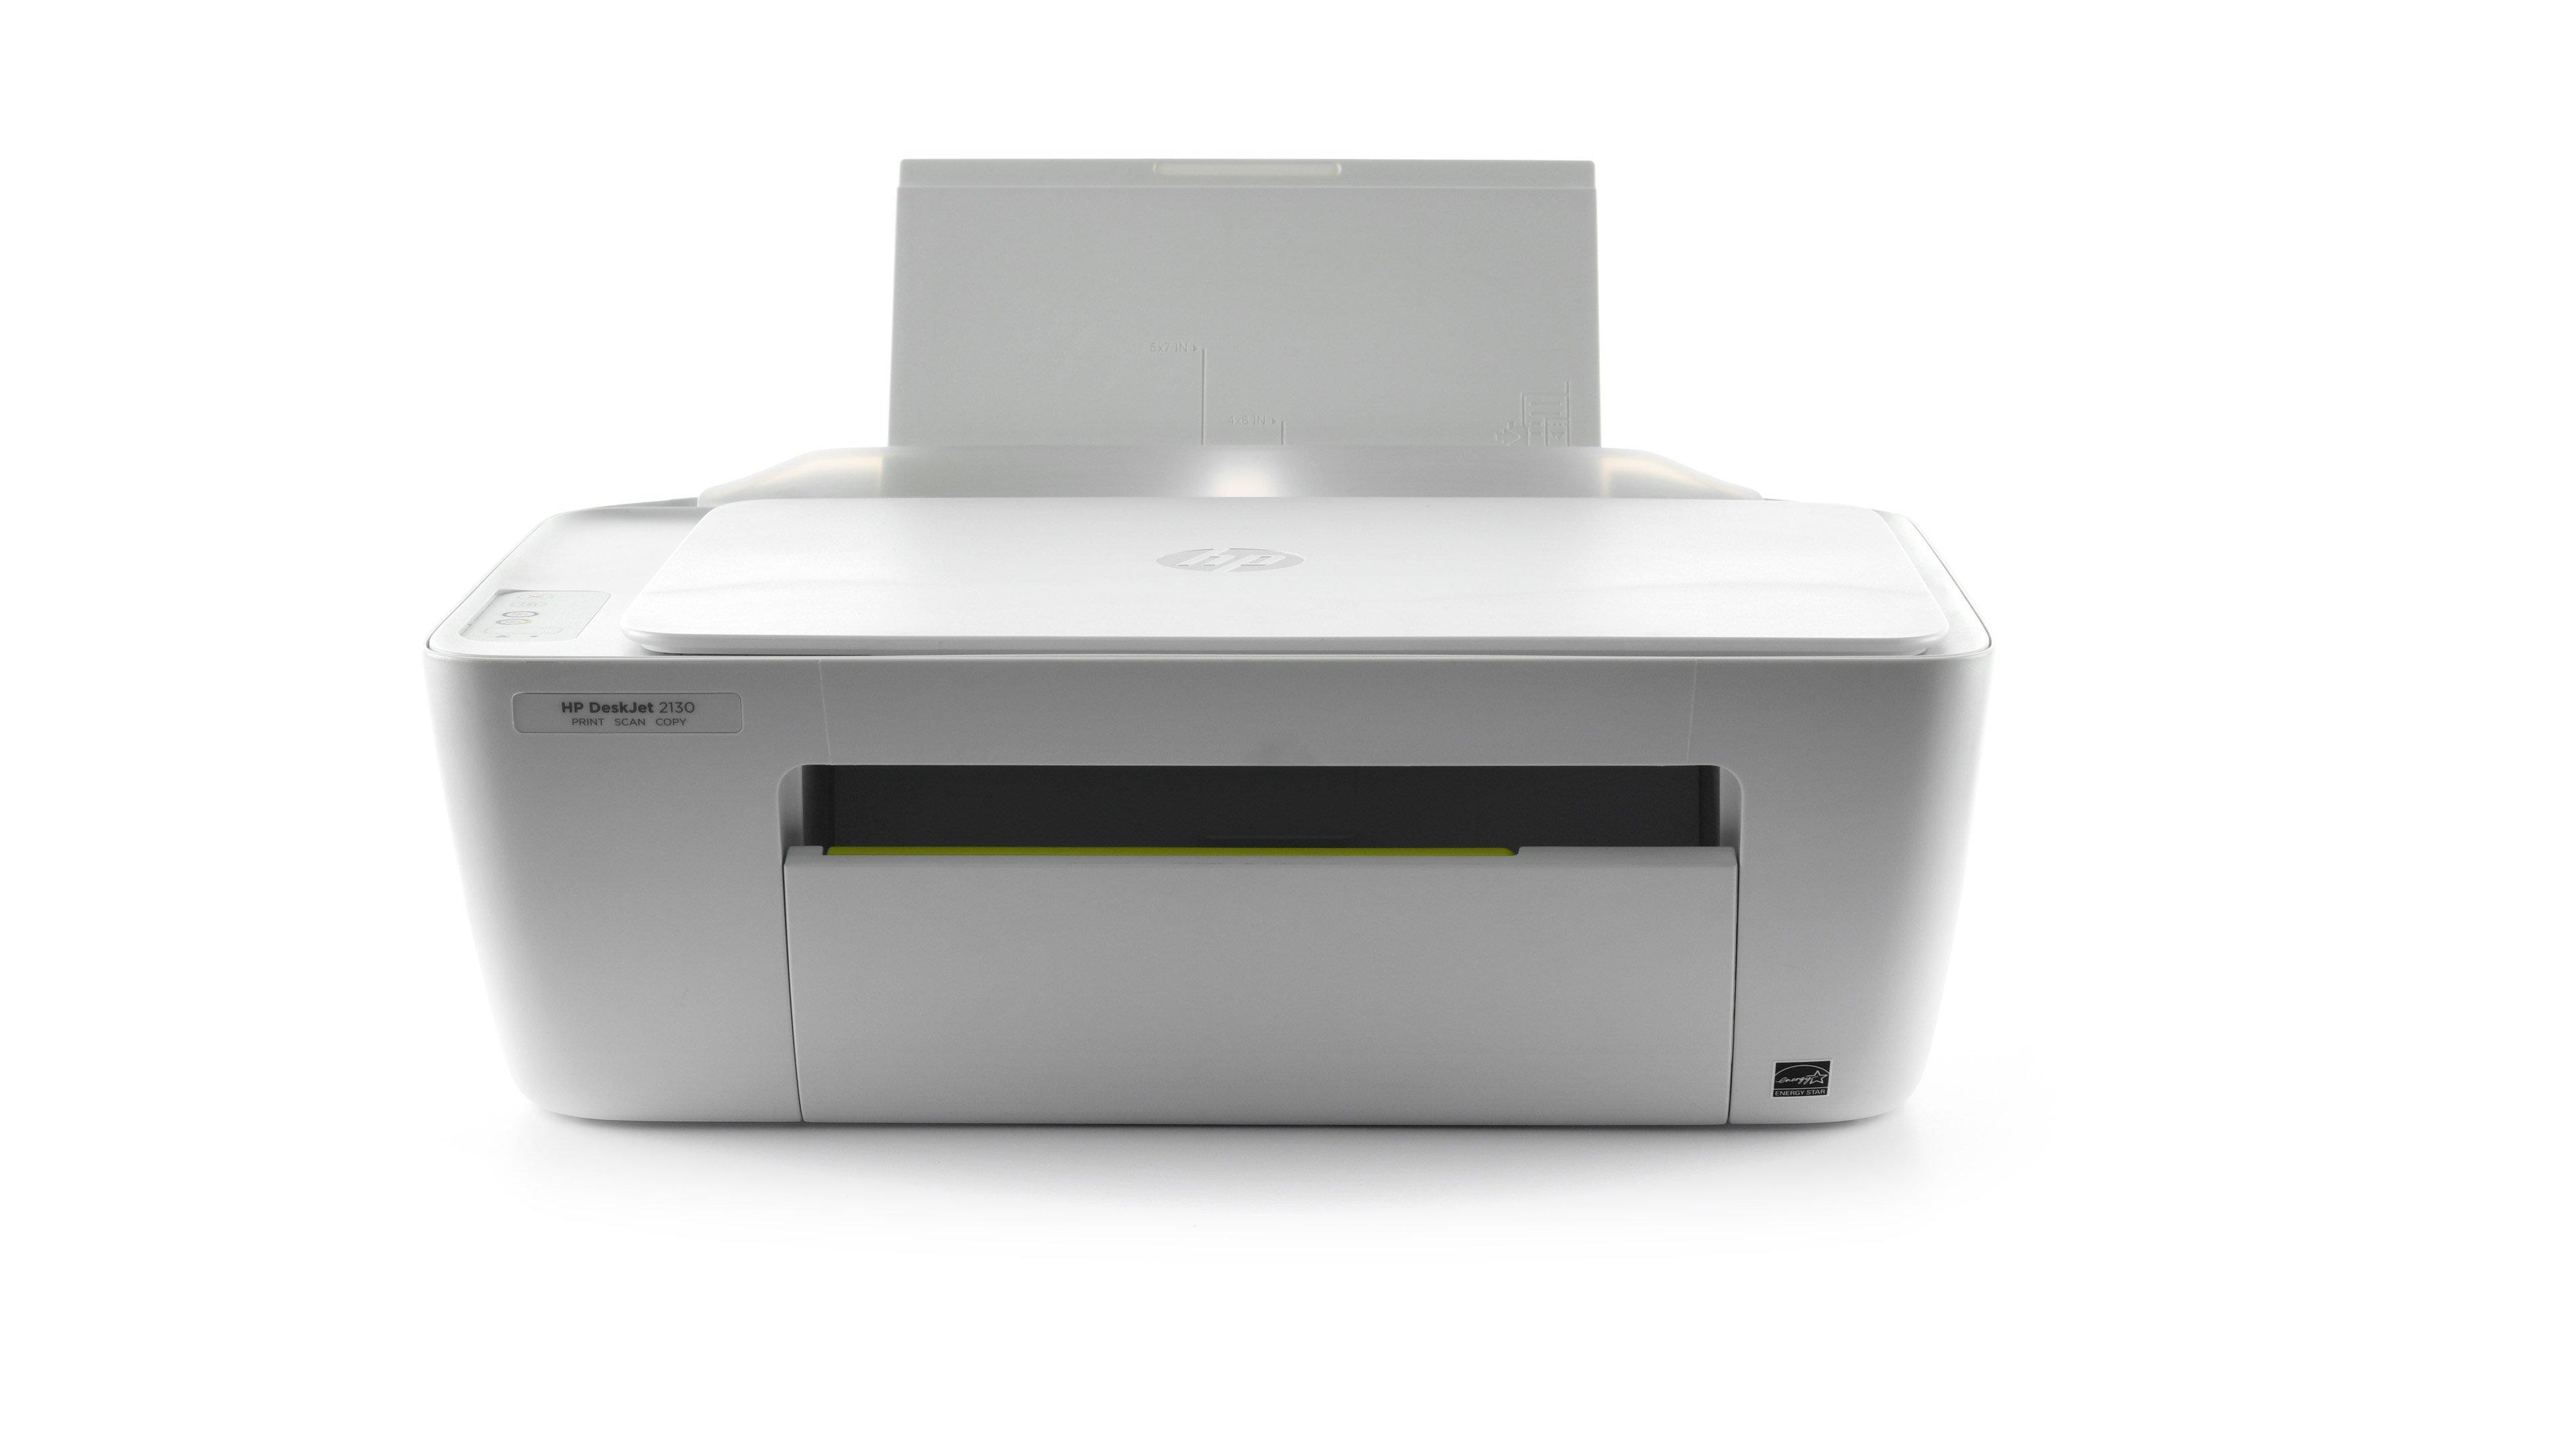 Hp Deskjet 2130 All In One Printer Printcopyscan White Price In